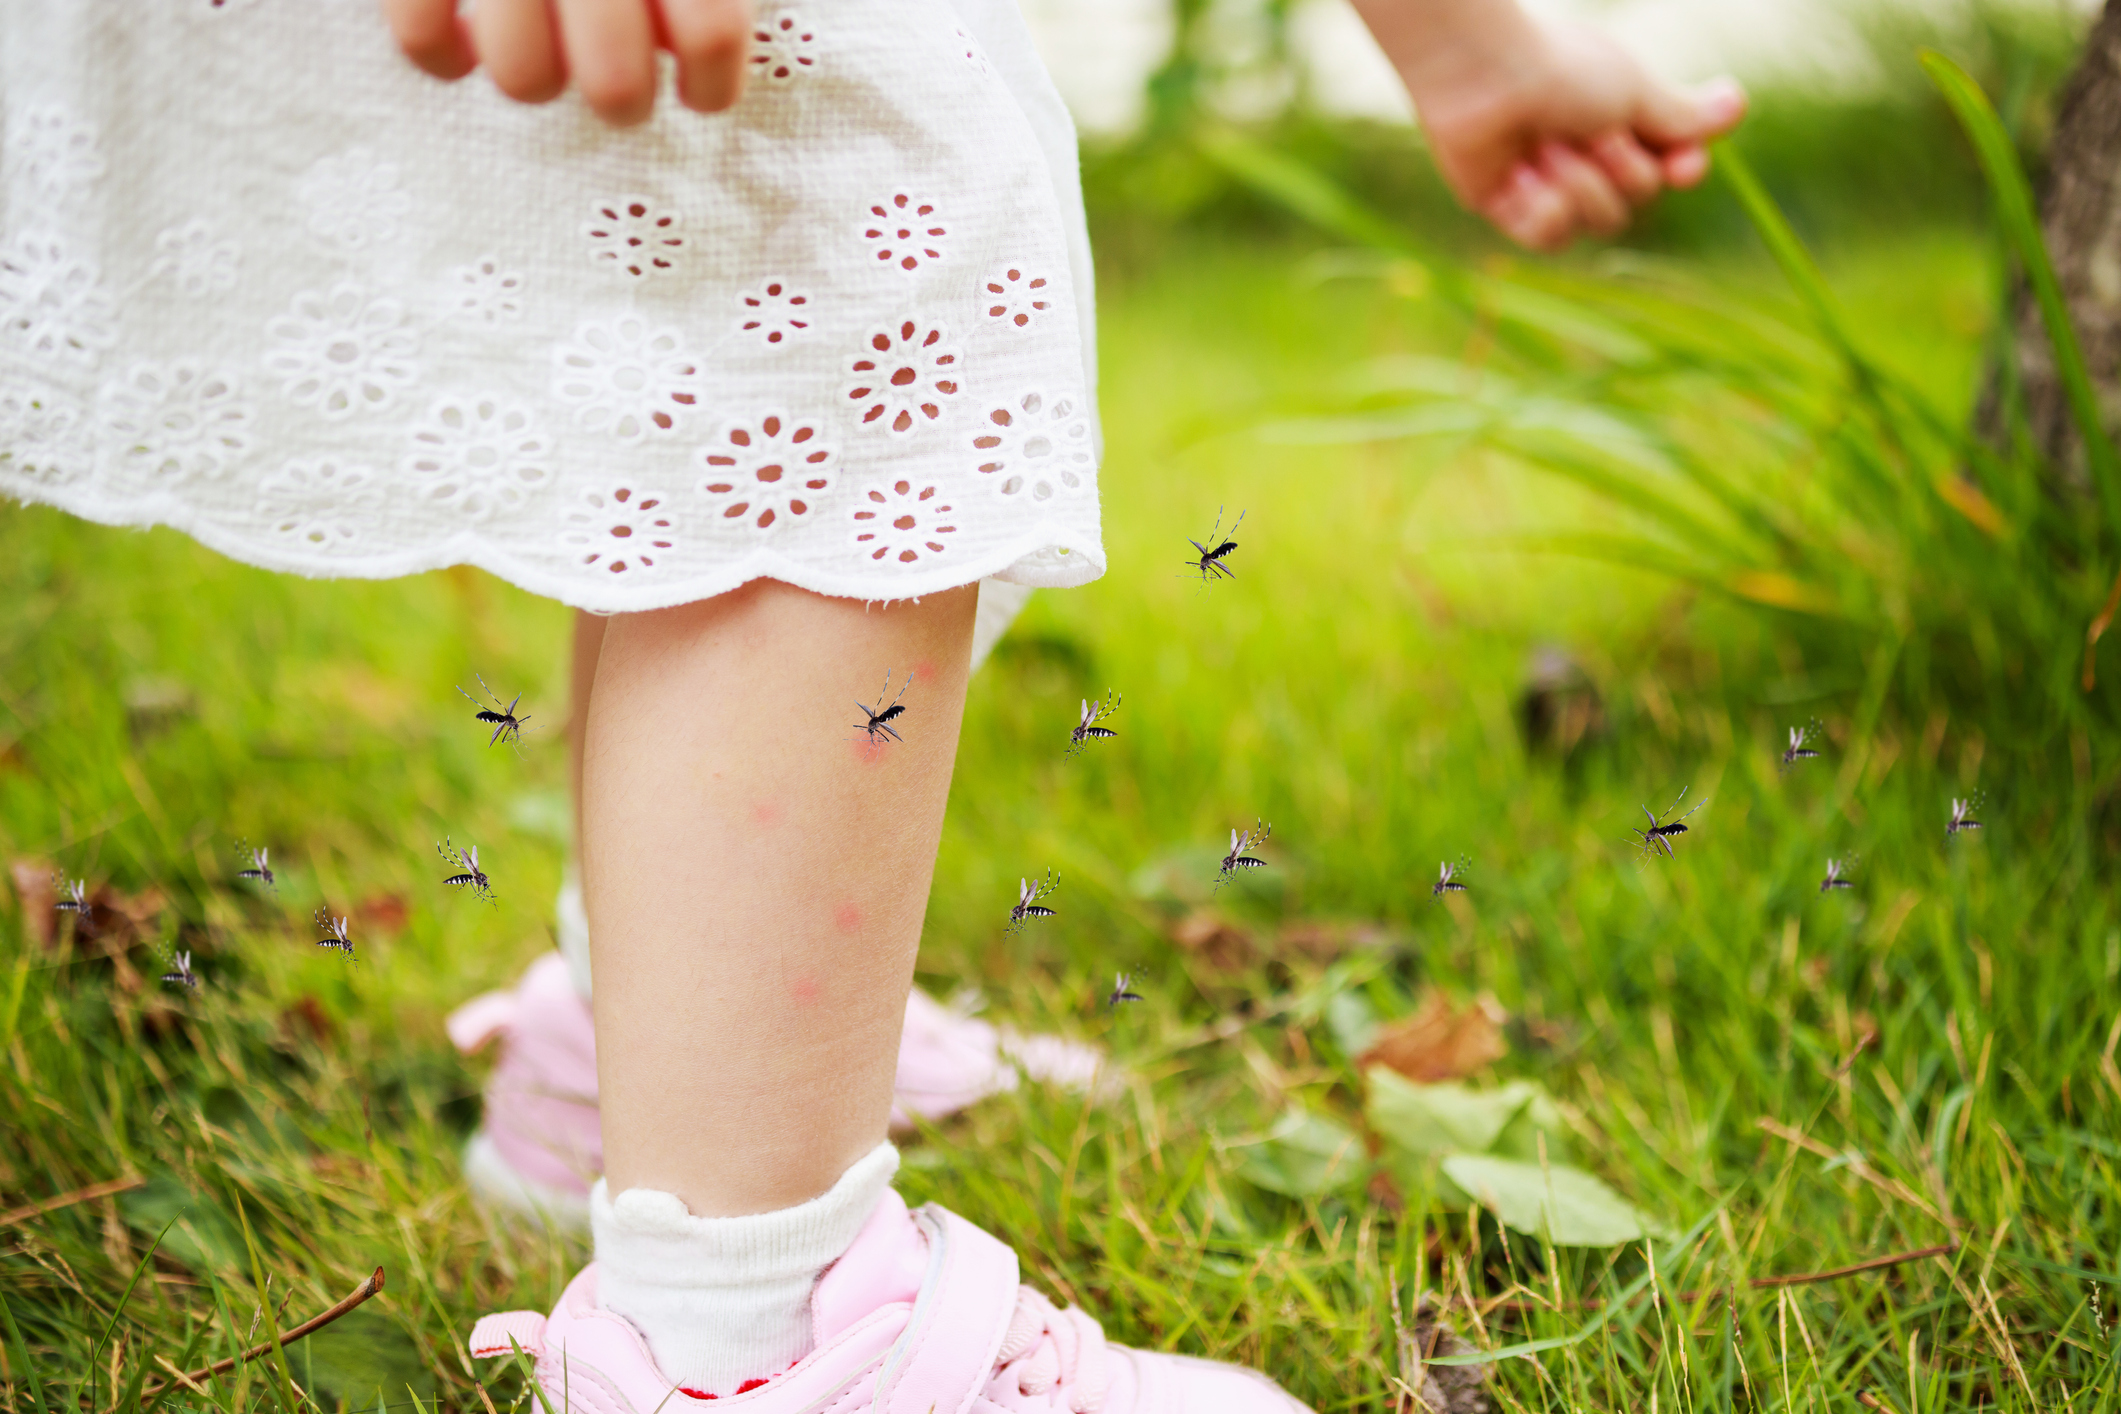 Ребенка покусали комары и мошки: как снять зуд, отек и боль